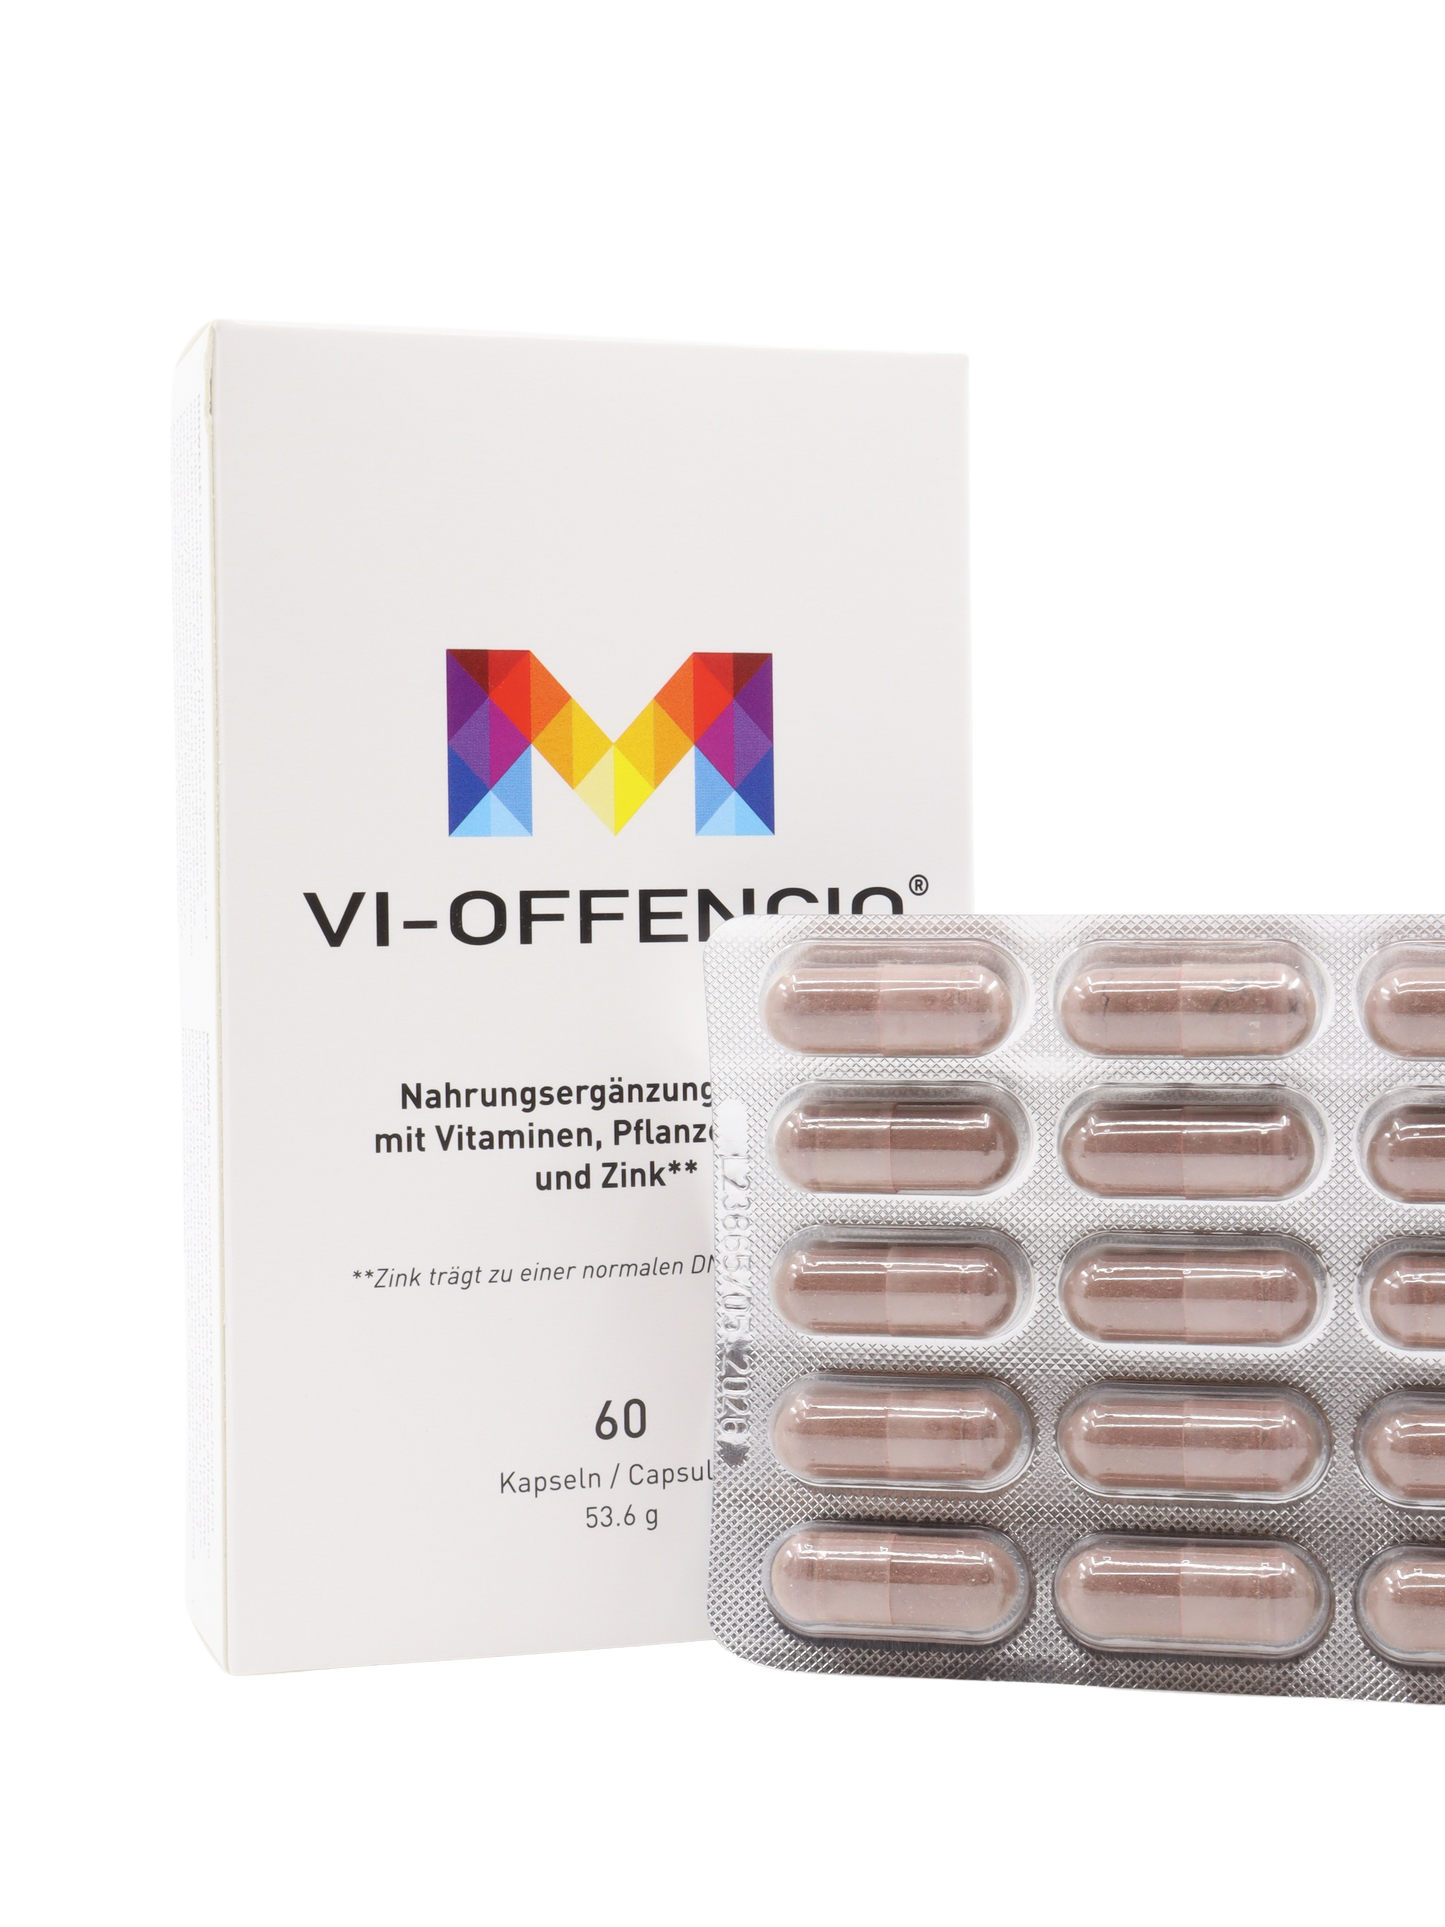 VIRMUNE® new VI-OFFENCIO immune regulator